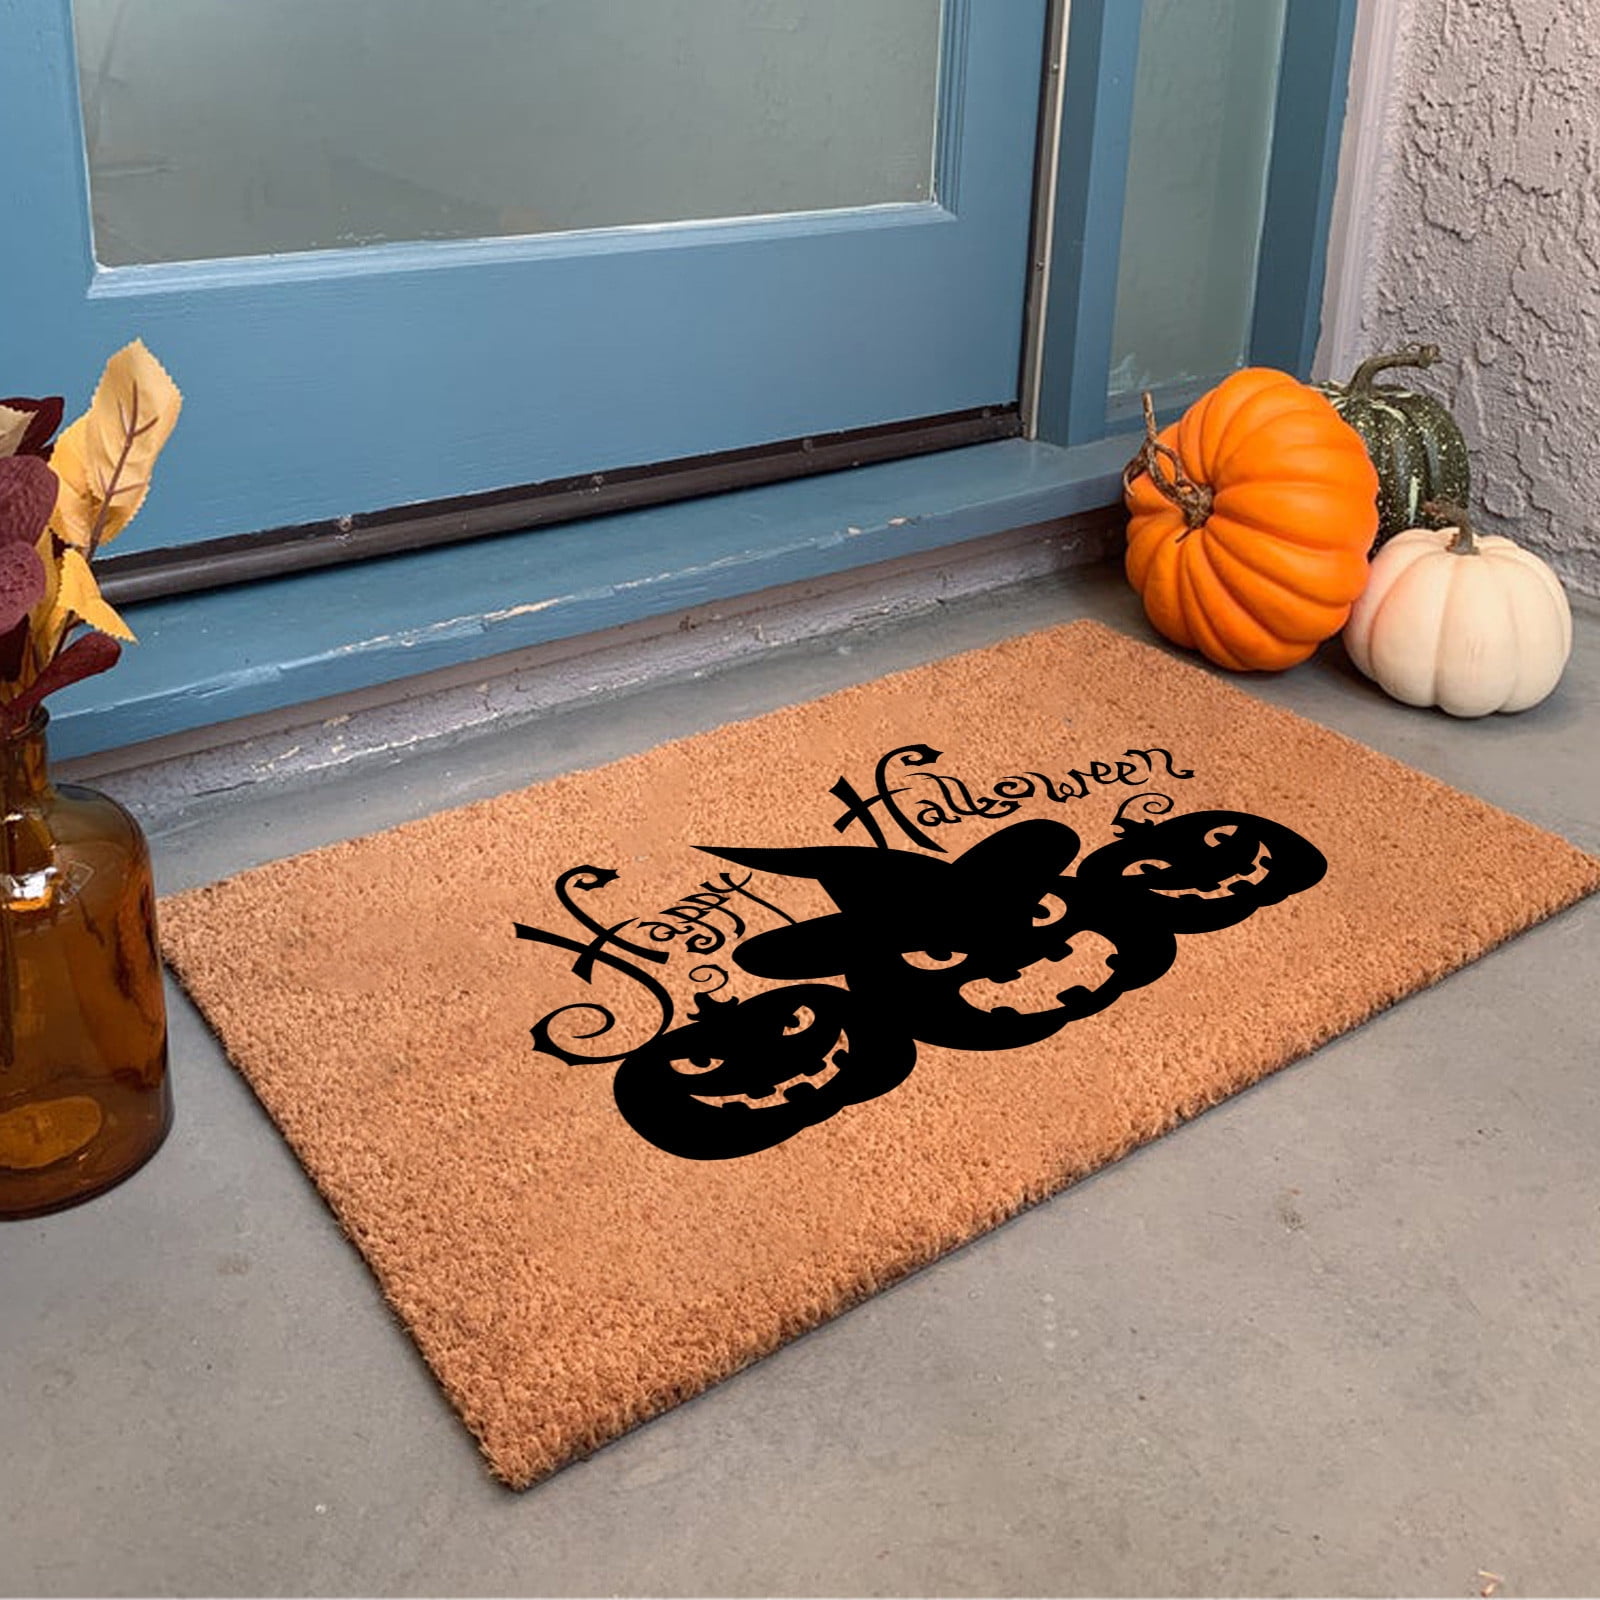 Baccessor Halloween Boo Doormat Indoor Outdoor Rug, Autumn Black Cat  Pumpkin Bats Front Door Welcome Mat Anti-Slip for Entrance Holiday Seasonal  Kitchen Floor Decortion 17 x 29 Inch